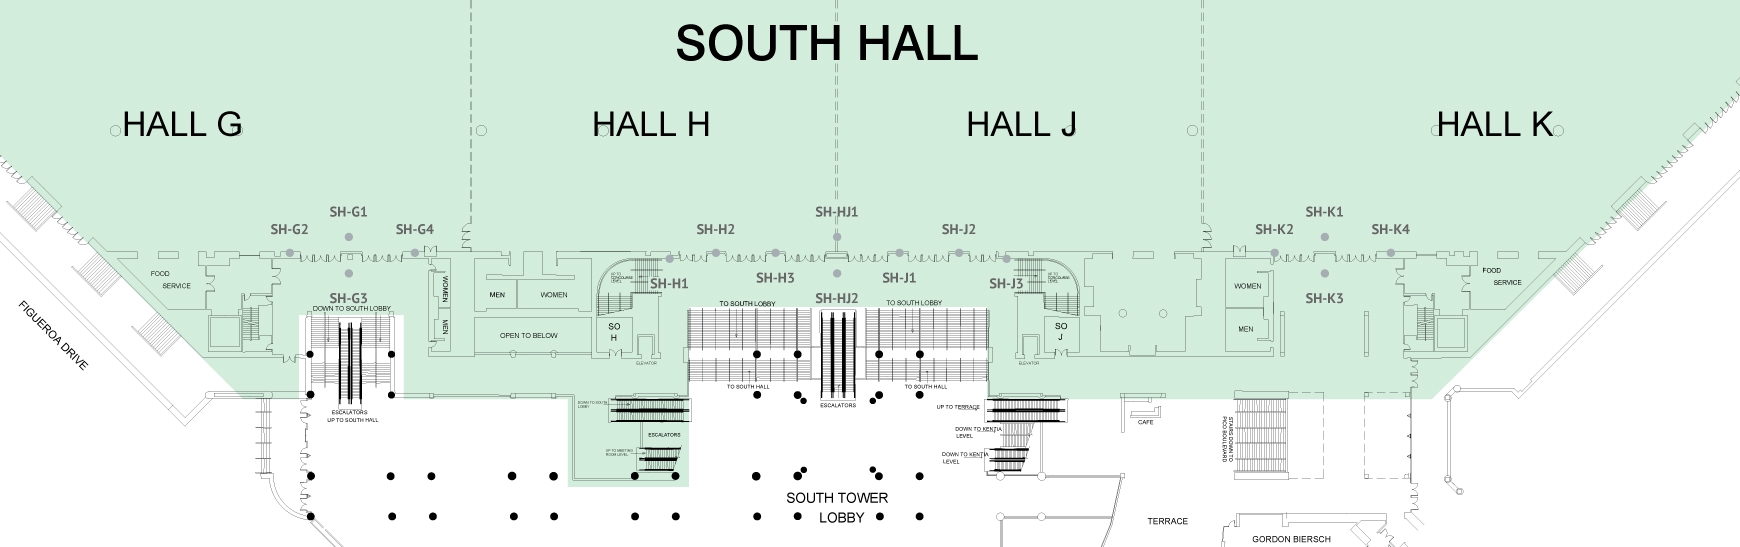 South Hall